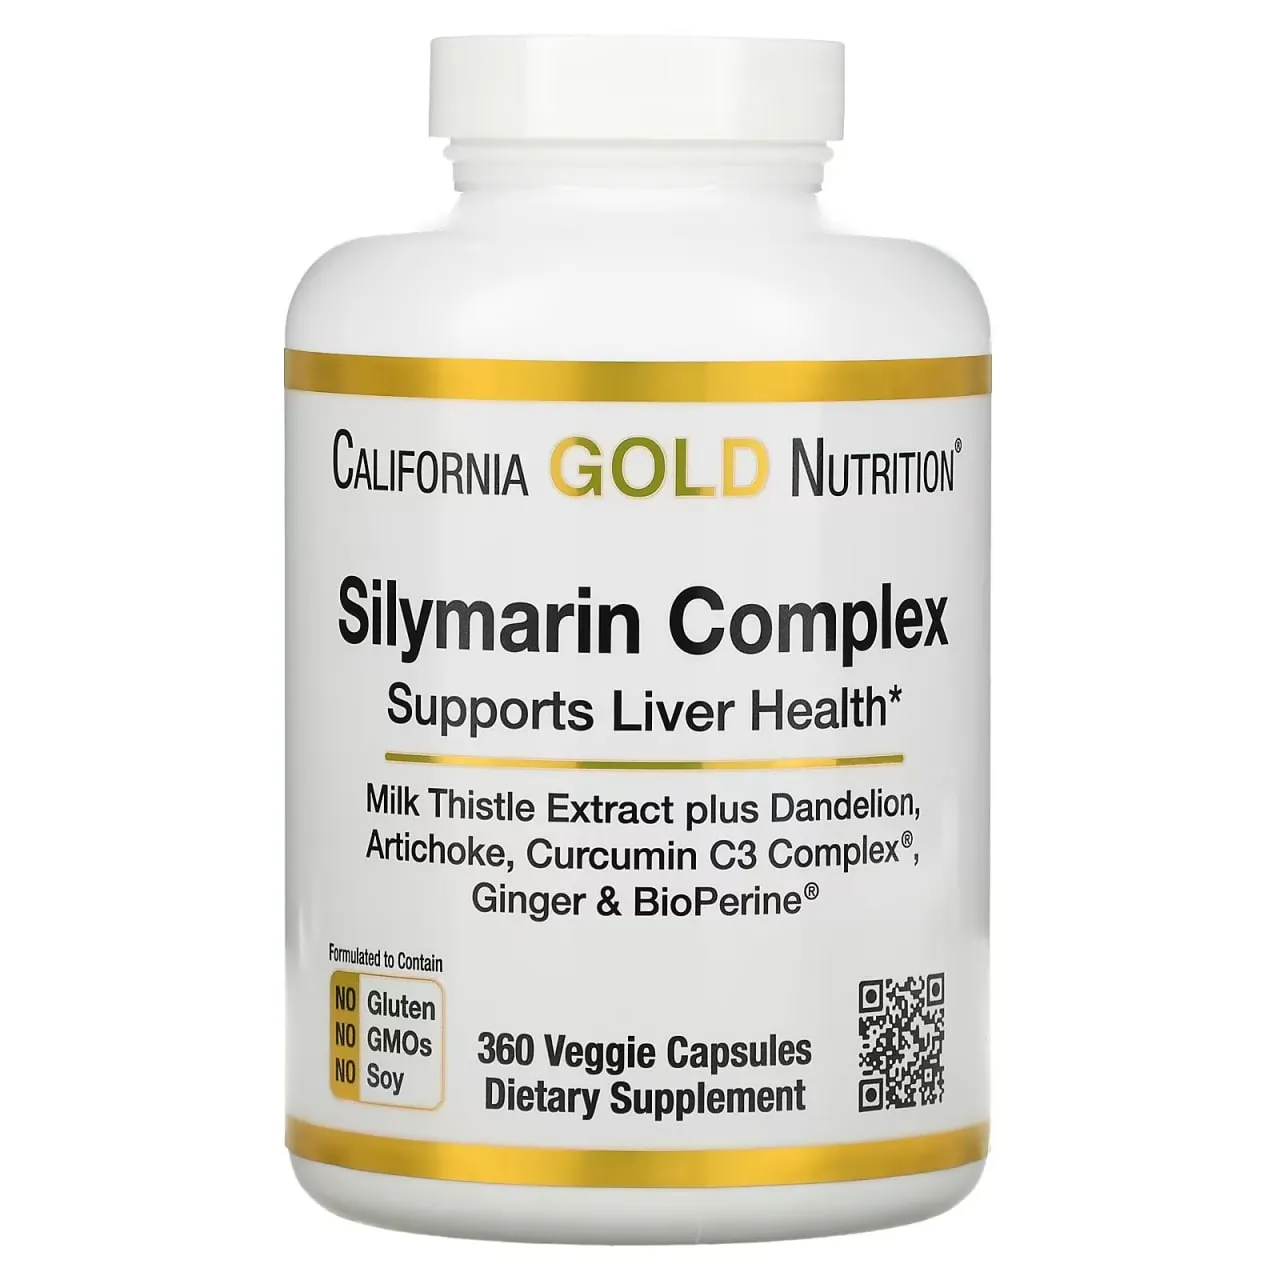 California Gold Nutrition, комплекс с силимарином, экстракт расторопши и одуванчик, артишок, куркумин C3 Complex, имбирь и BioPerine, 360 растительных капсул#1